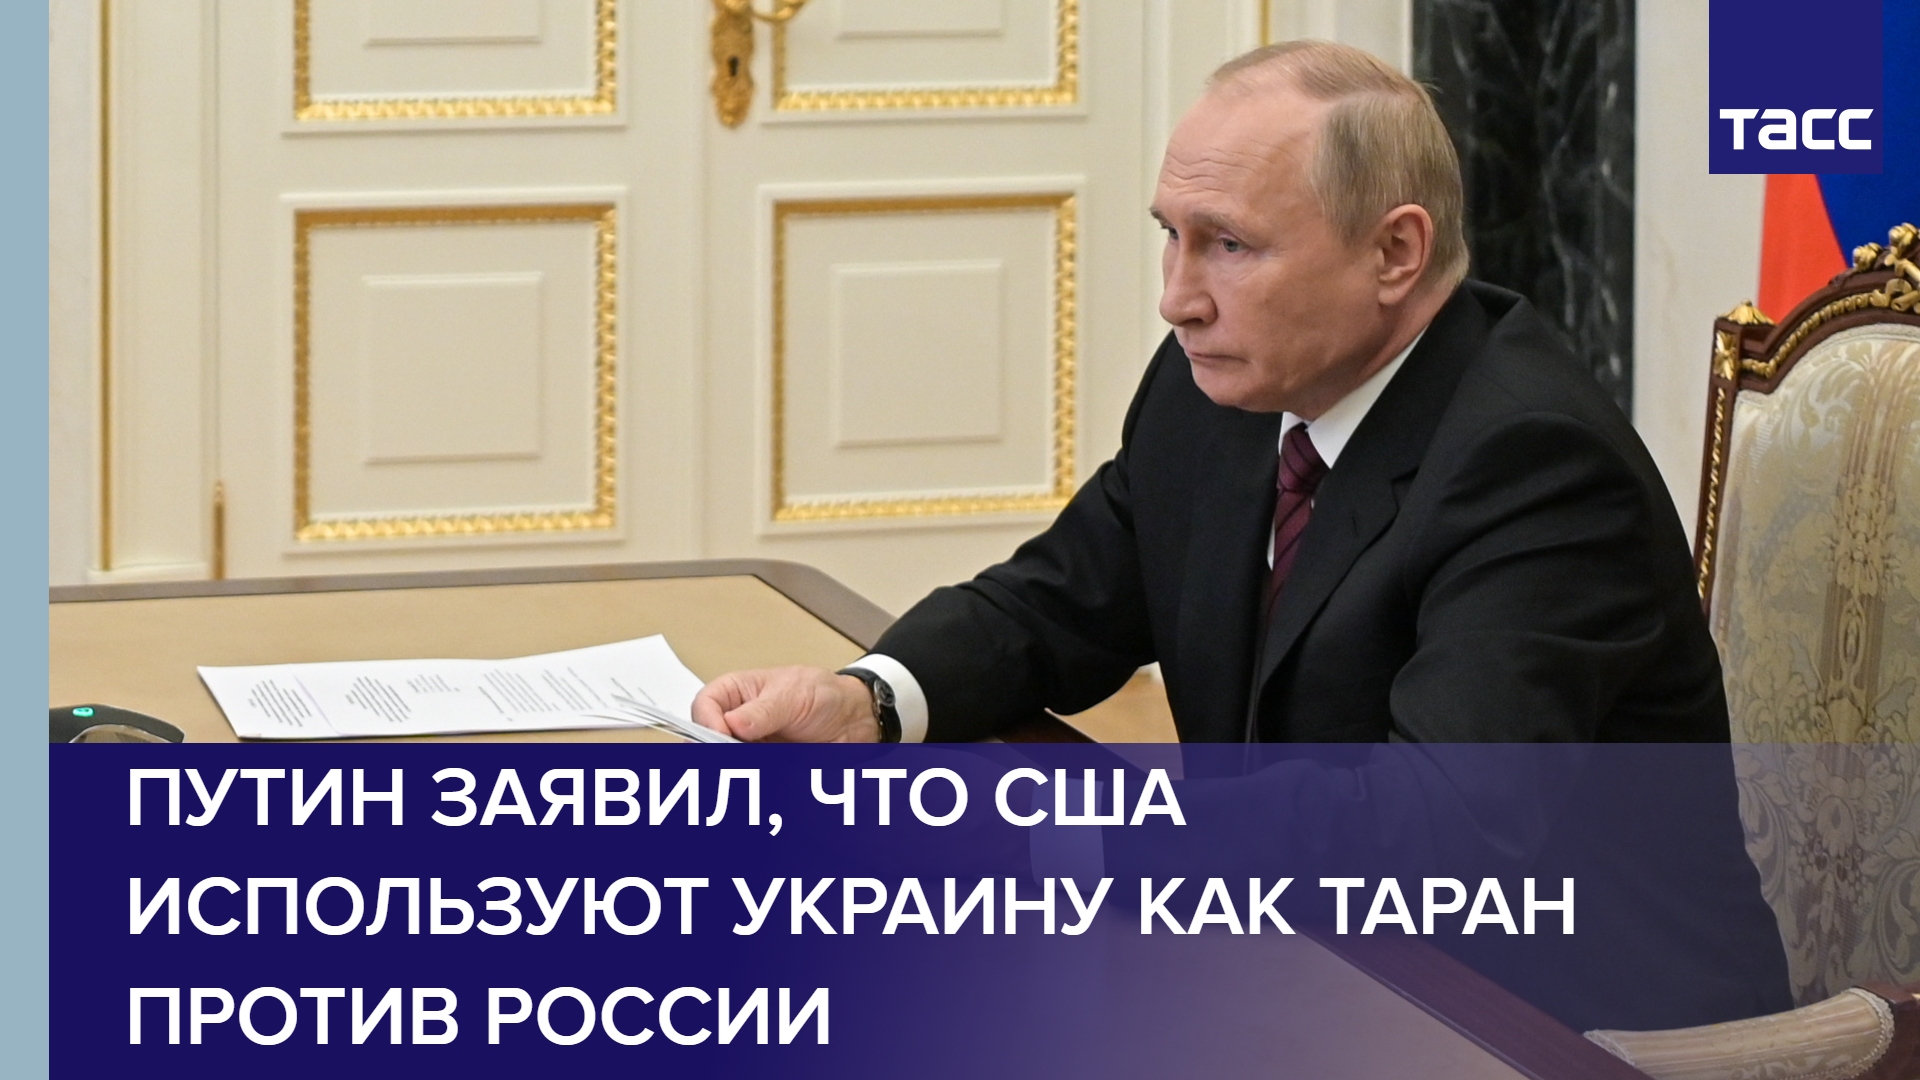 Путин заявил, что США используют Украину как таран против России #shorts